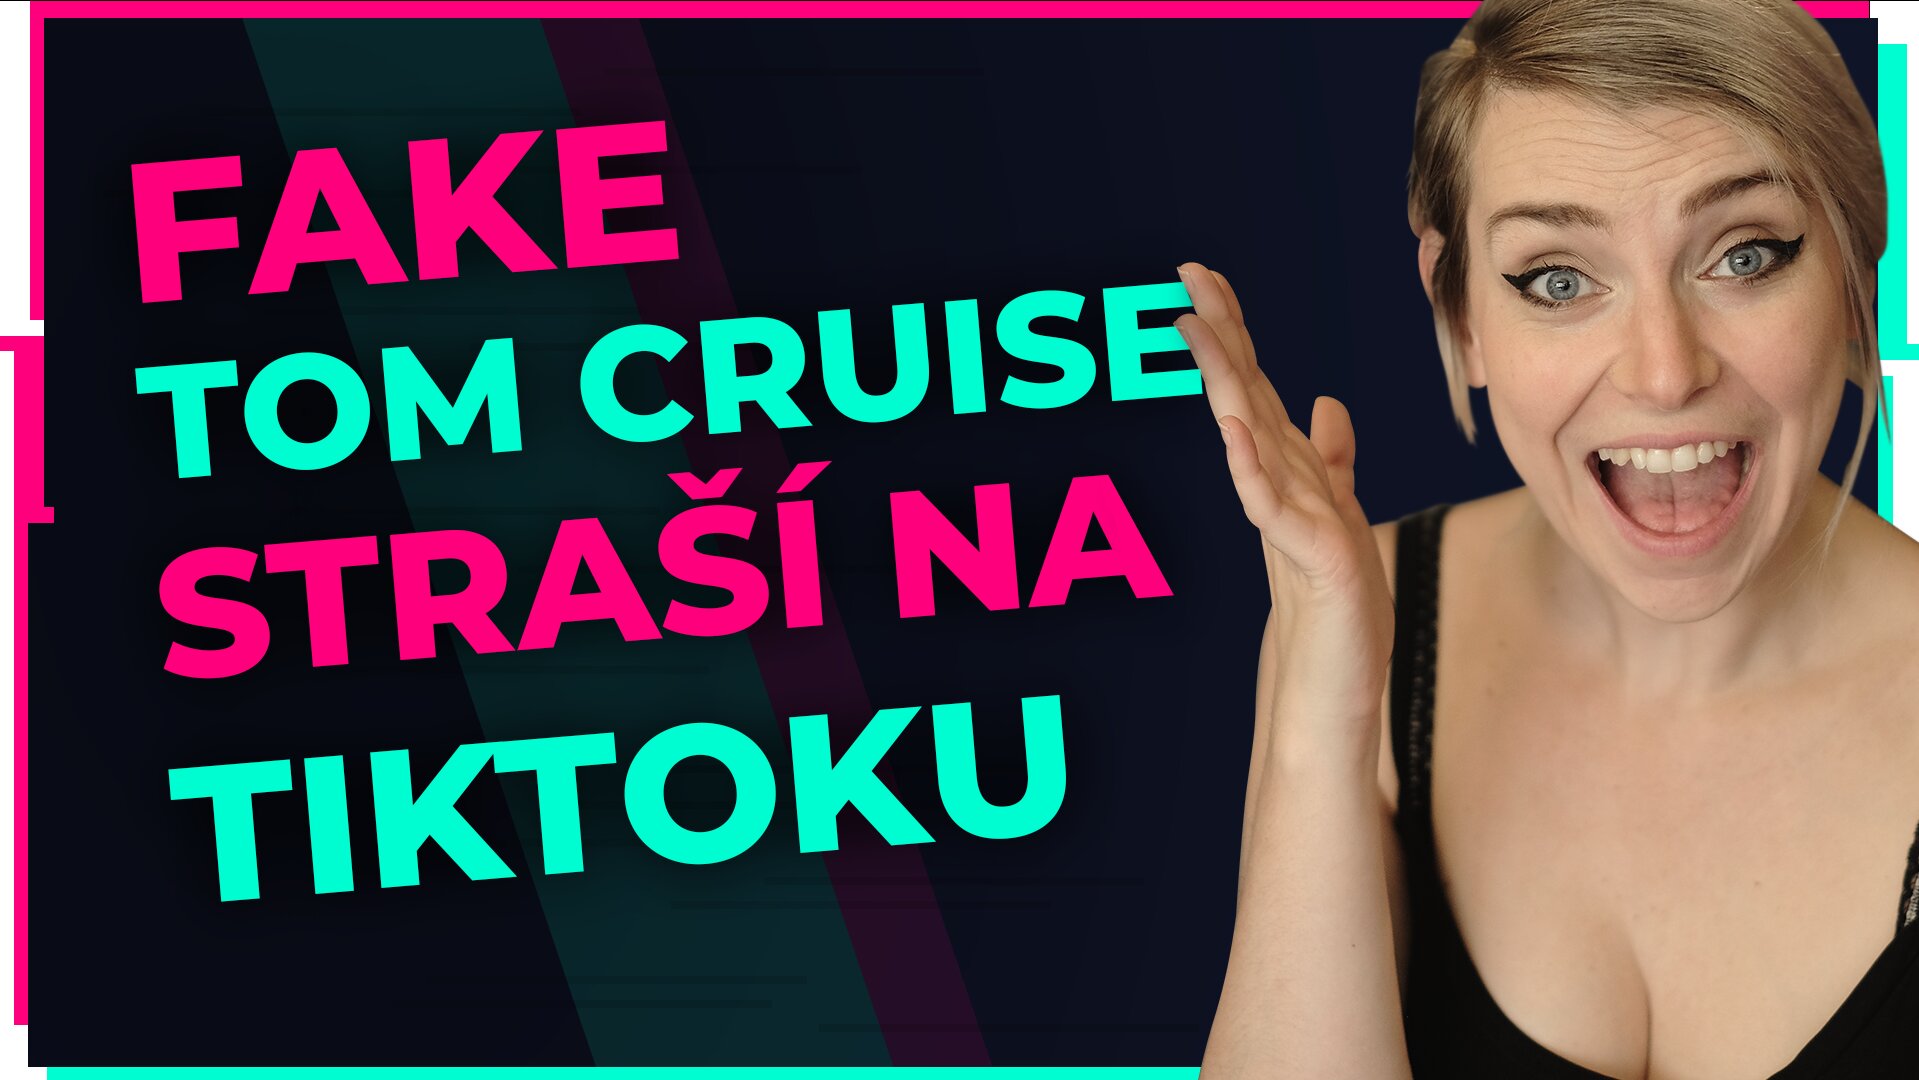 Fake Tom Cruise straší na TikToku! | GEEK News #24 + vyhlášení soutěže o Nintendo Switch